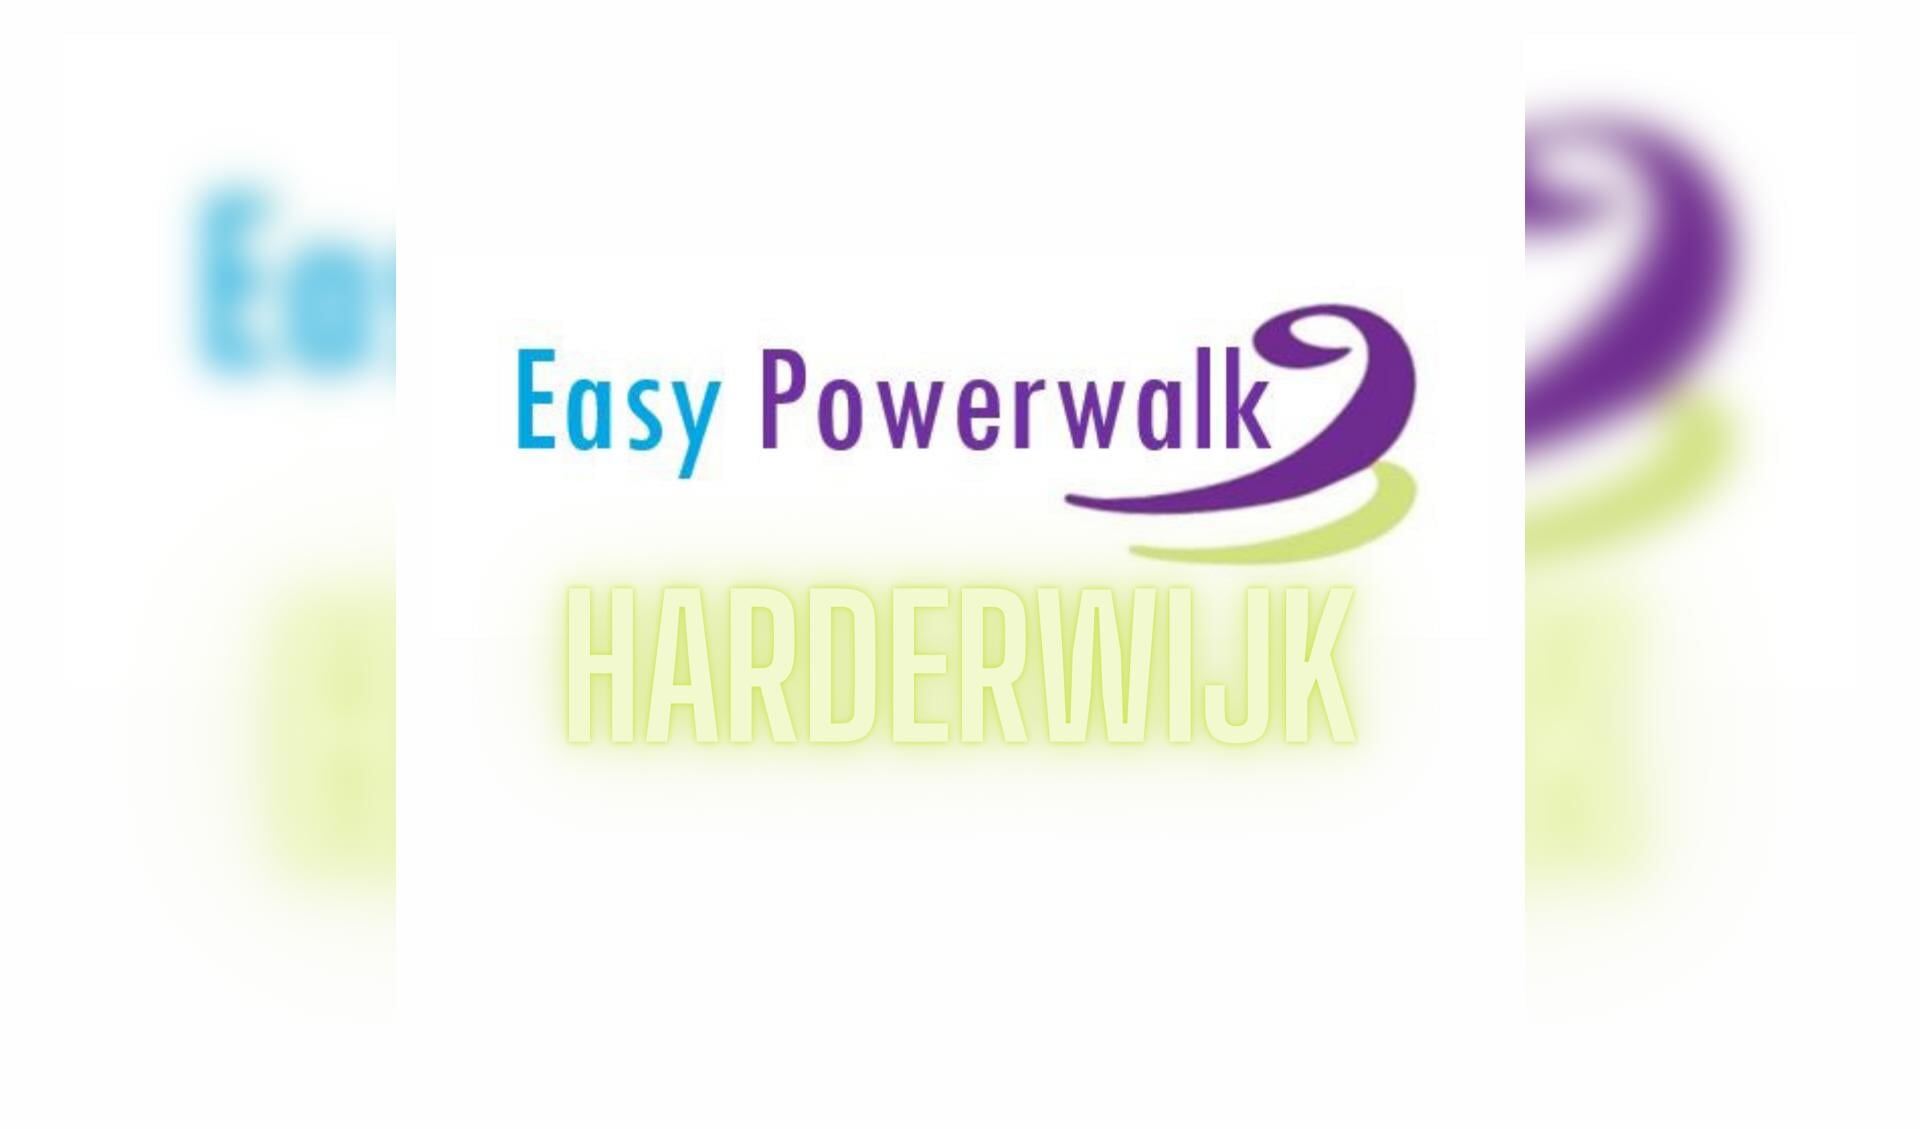 Easy Powerwalk Harderwijk